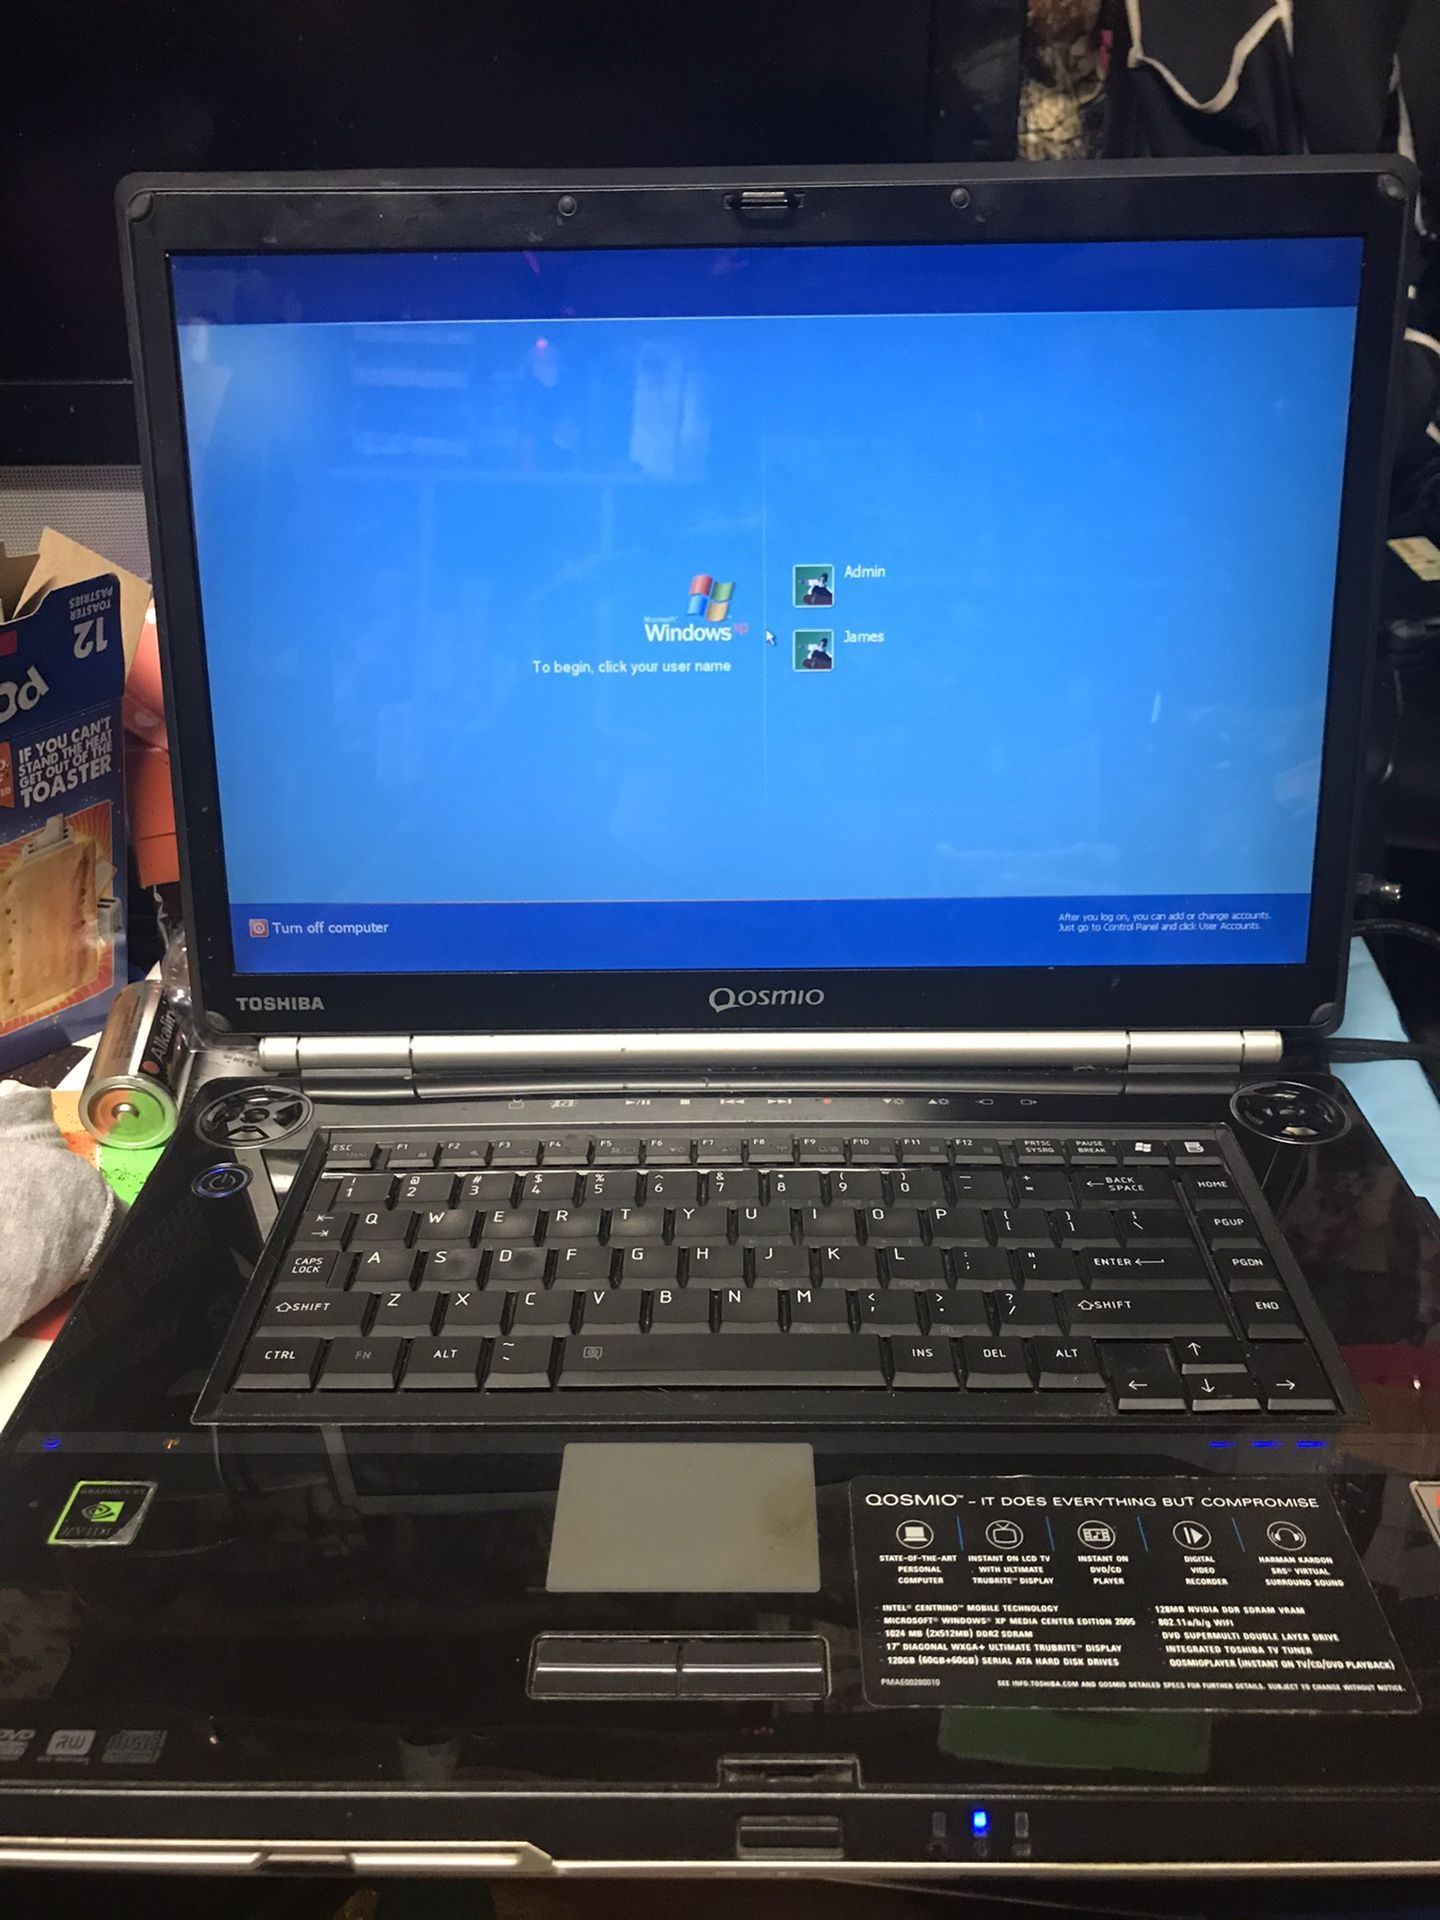 toshiba qosmio g25-av513 laptop